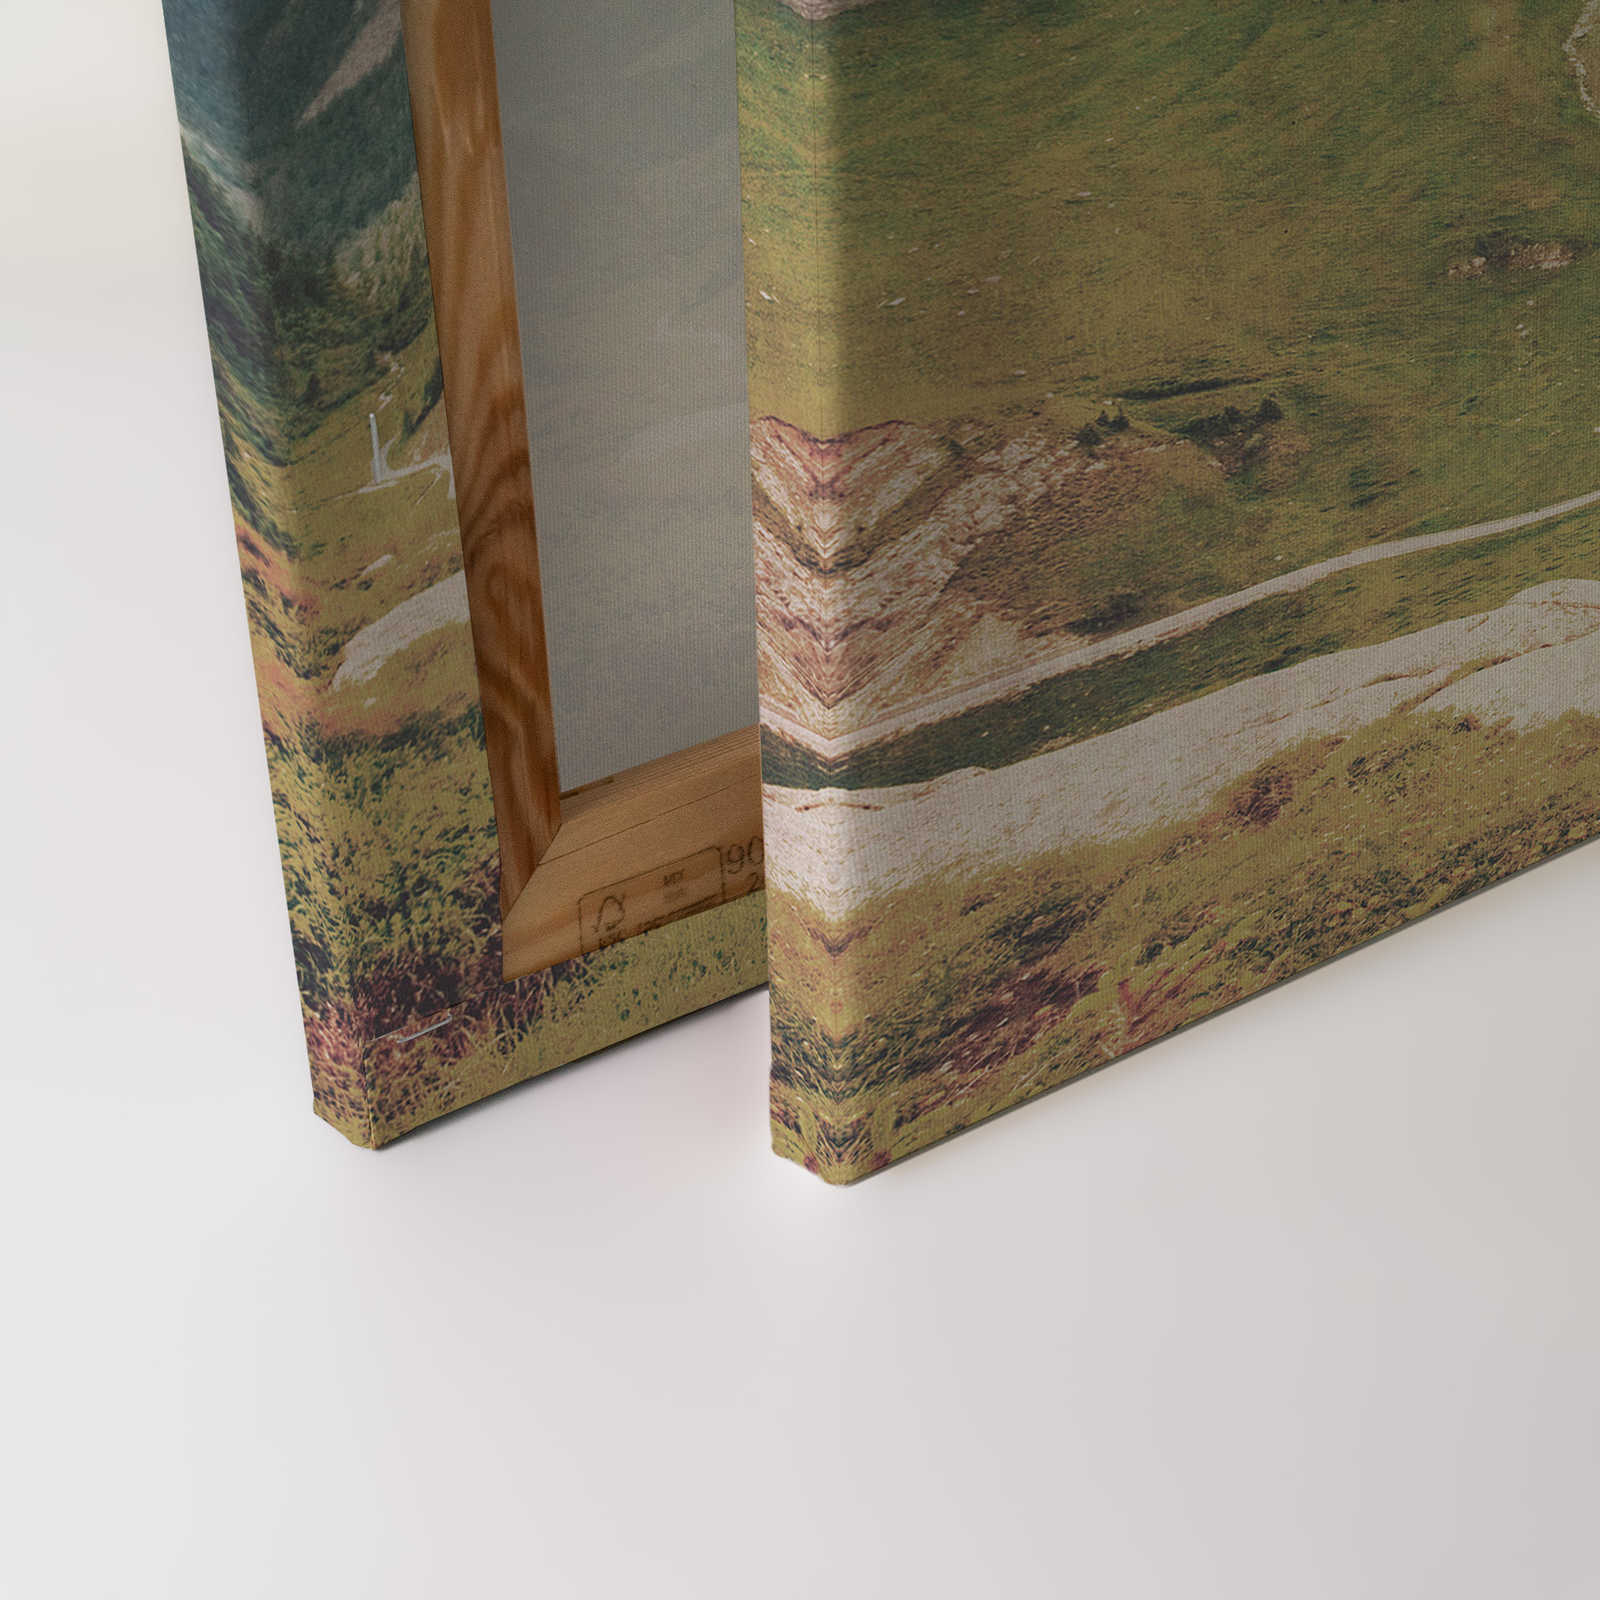             Dolomiti 2 - Quadro su tela Dolomiti retro fotografia con struttura in carta assorbente - 0,90 m x 0,60 m
        